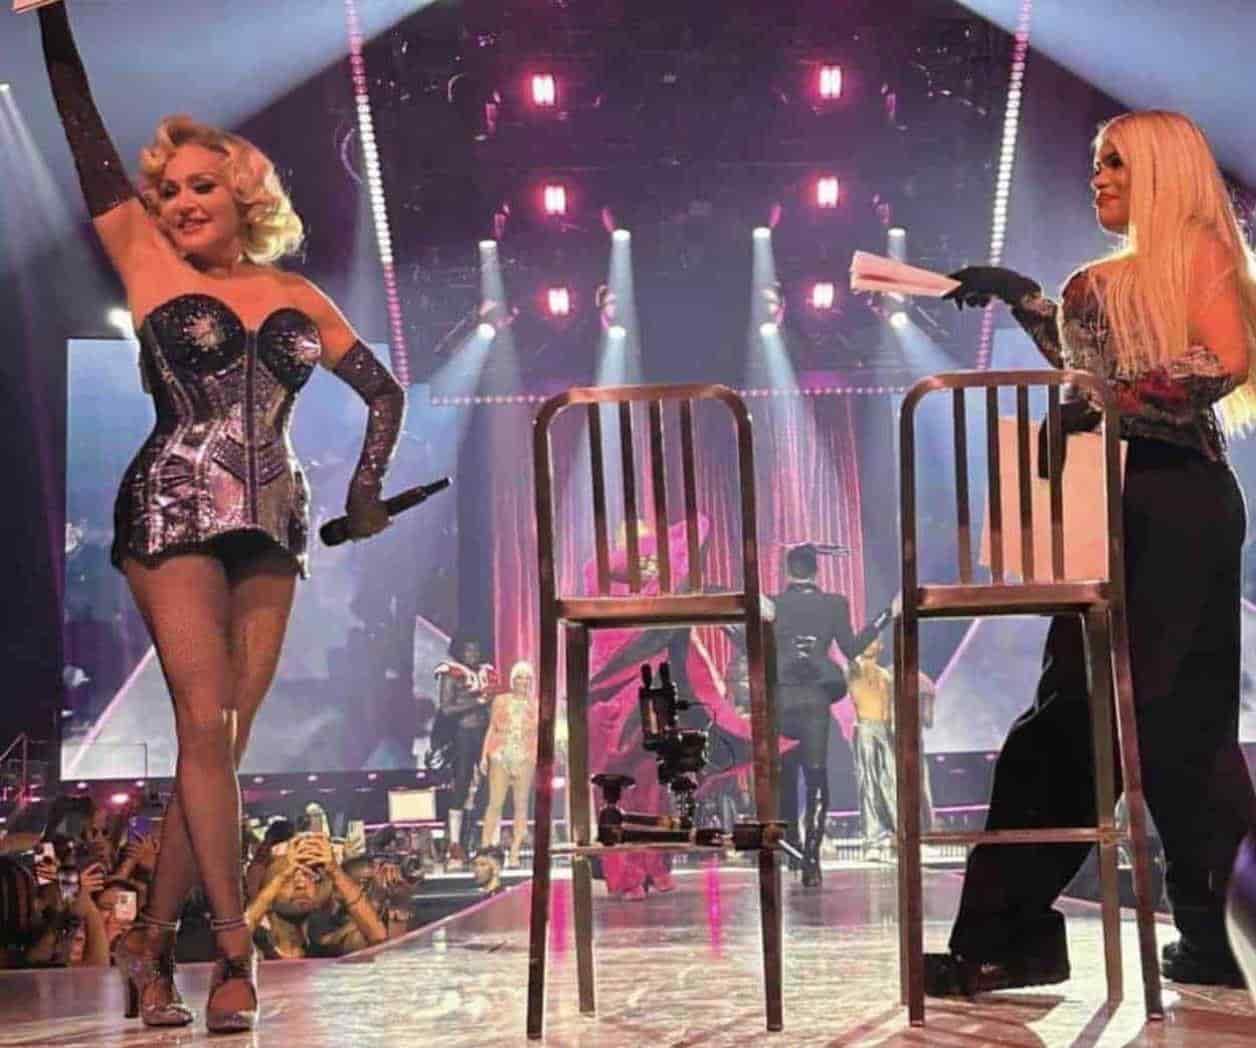 La razón del pleito entre Medina y Wendy en concierto de Madonna